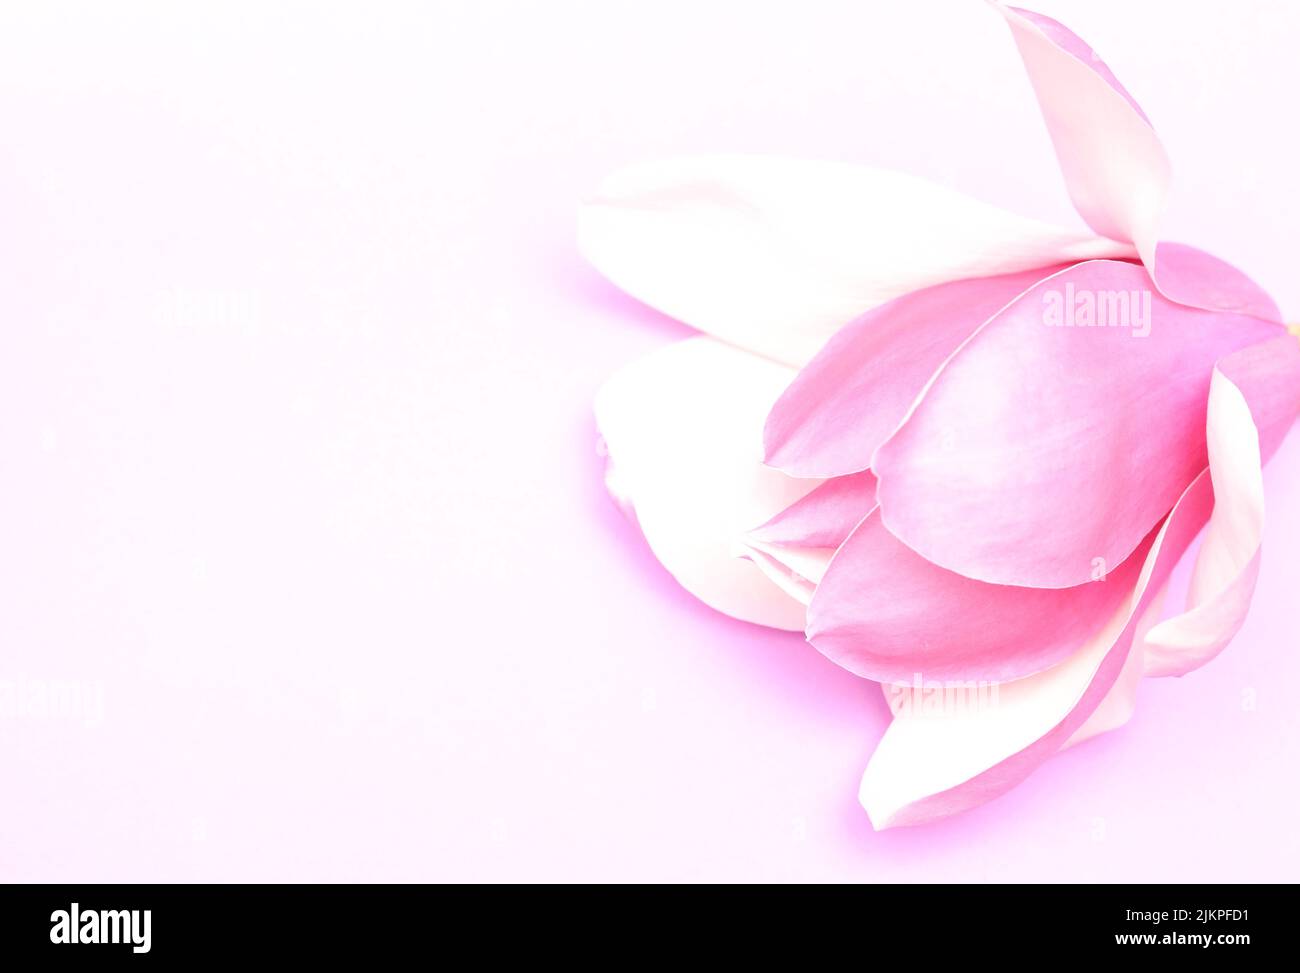 Deliberadamente sobre expuesto, soplado hacia fuera la flor de magnolia del pruple rosa y los pétalos contra un fondo pálido claro. Imagen monocromática de estilo ilustrativo Foto de stock